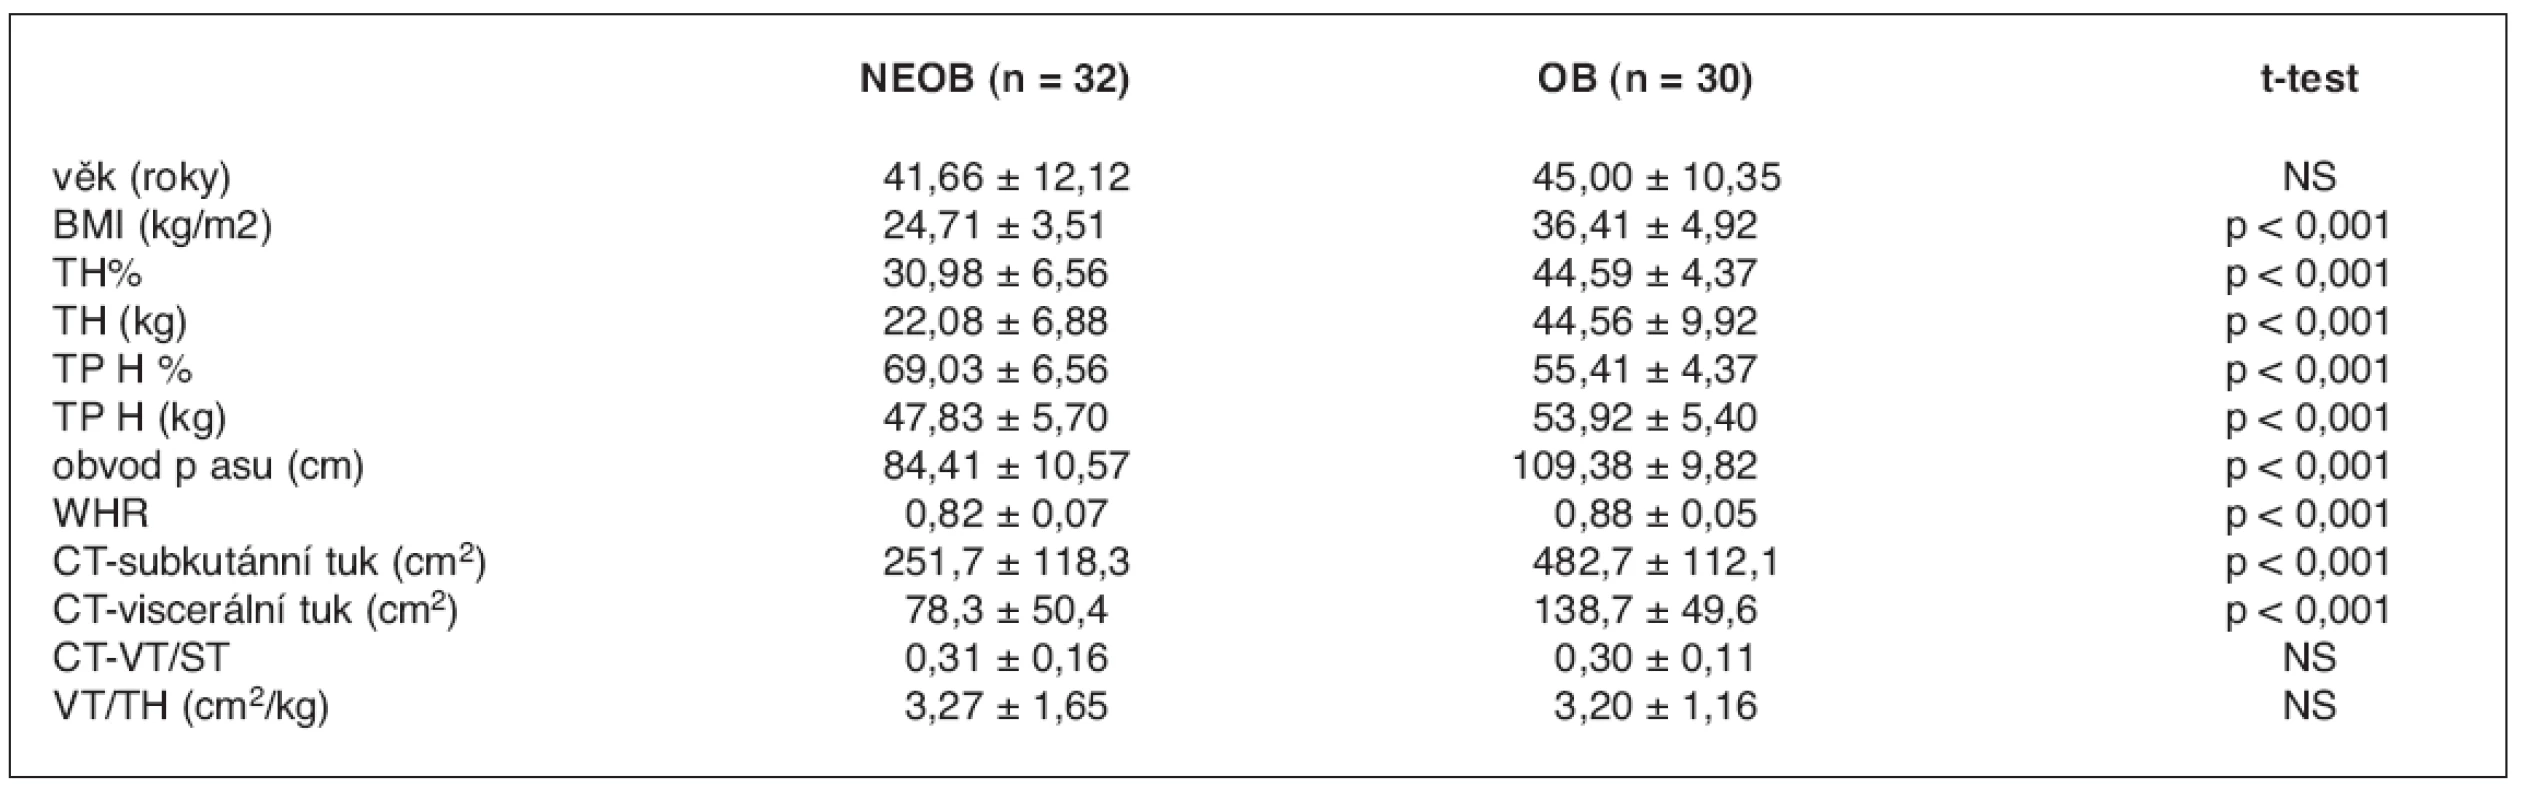 Antropometrické charakteristiky skupiny neobézních (NEOB) a obézních (OB) žen